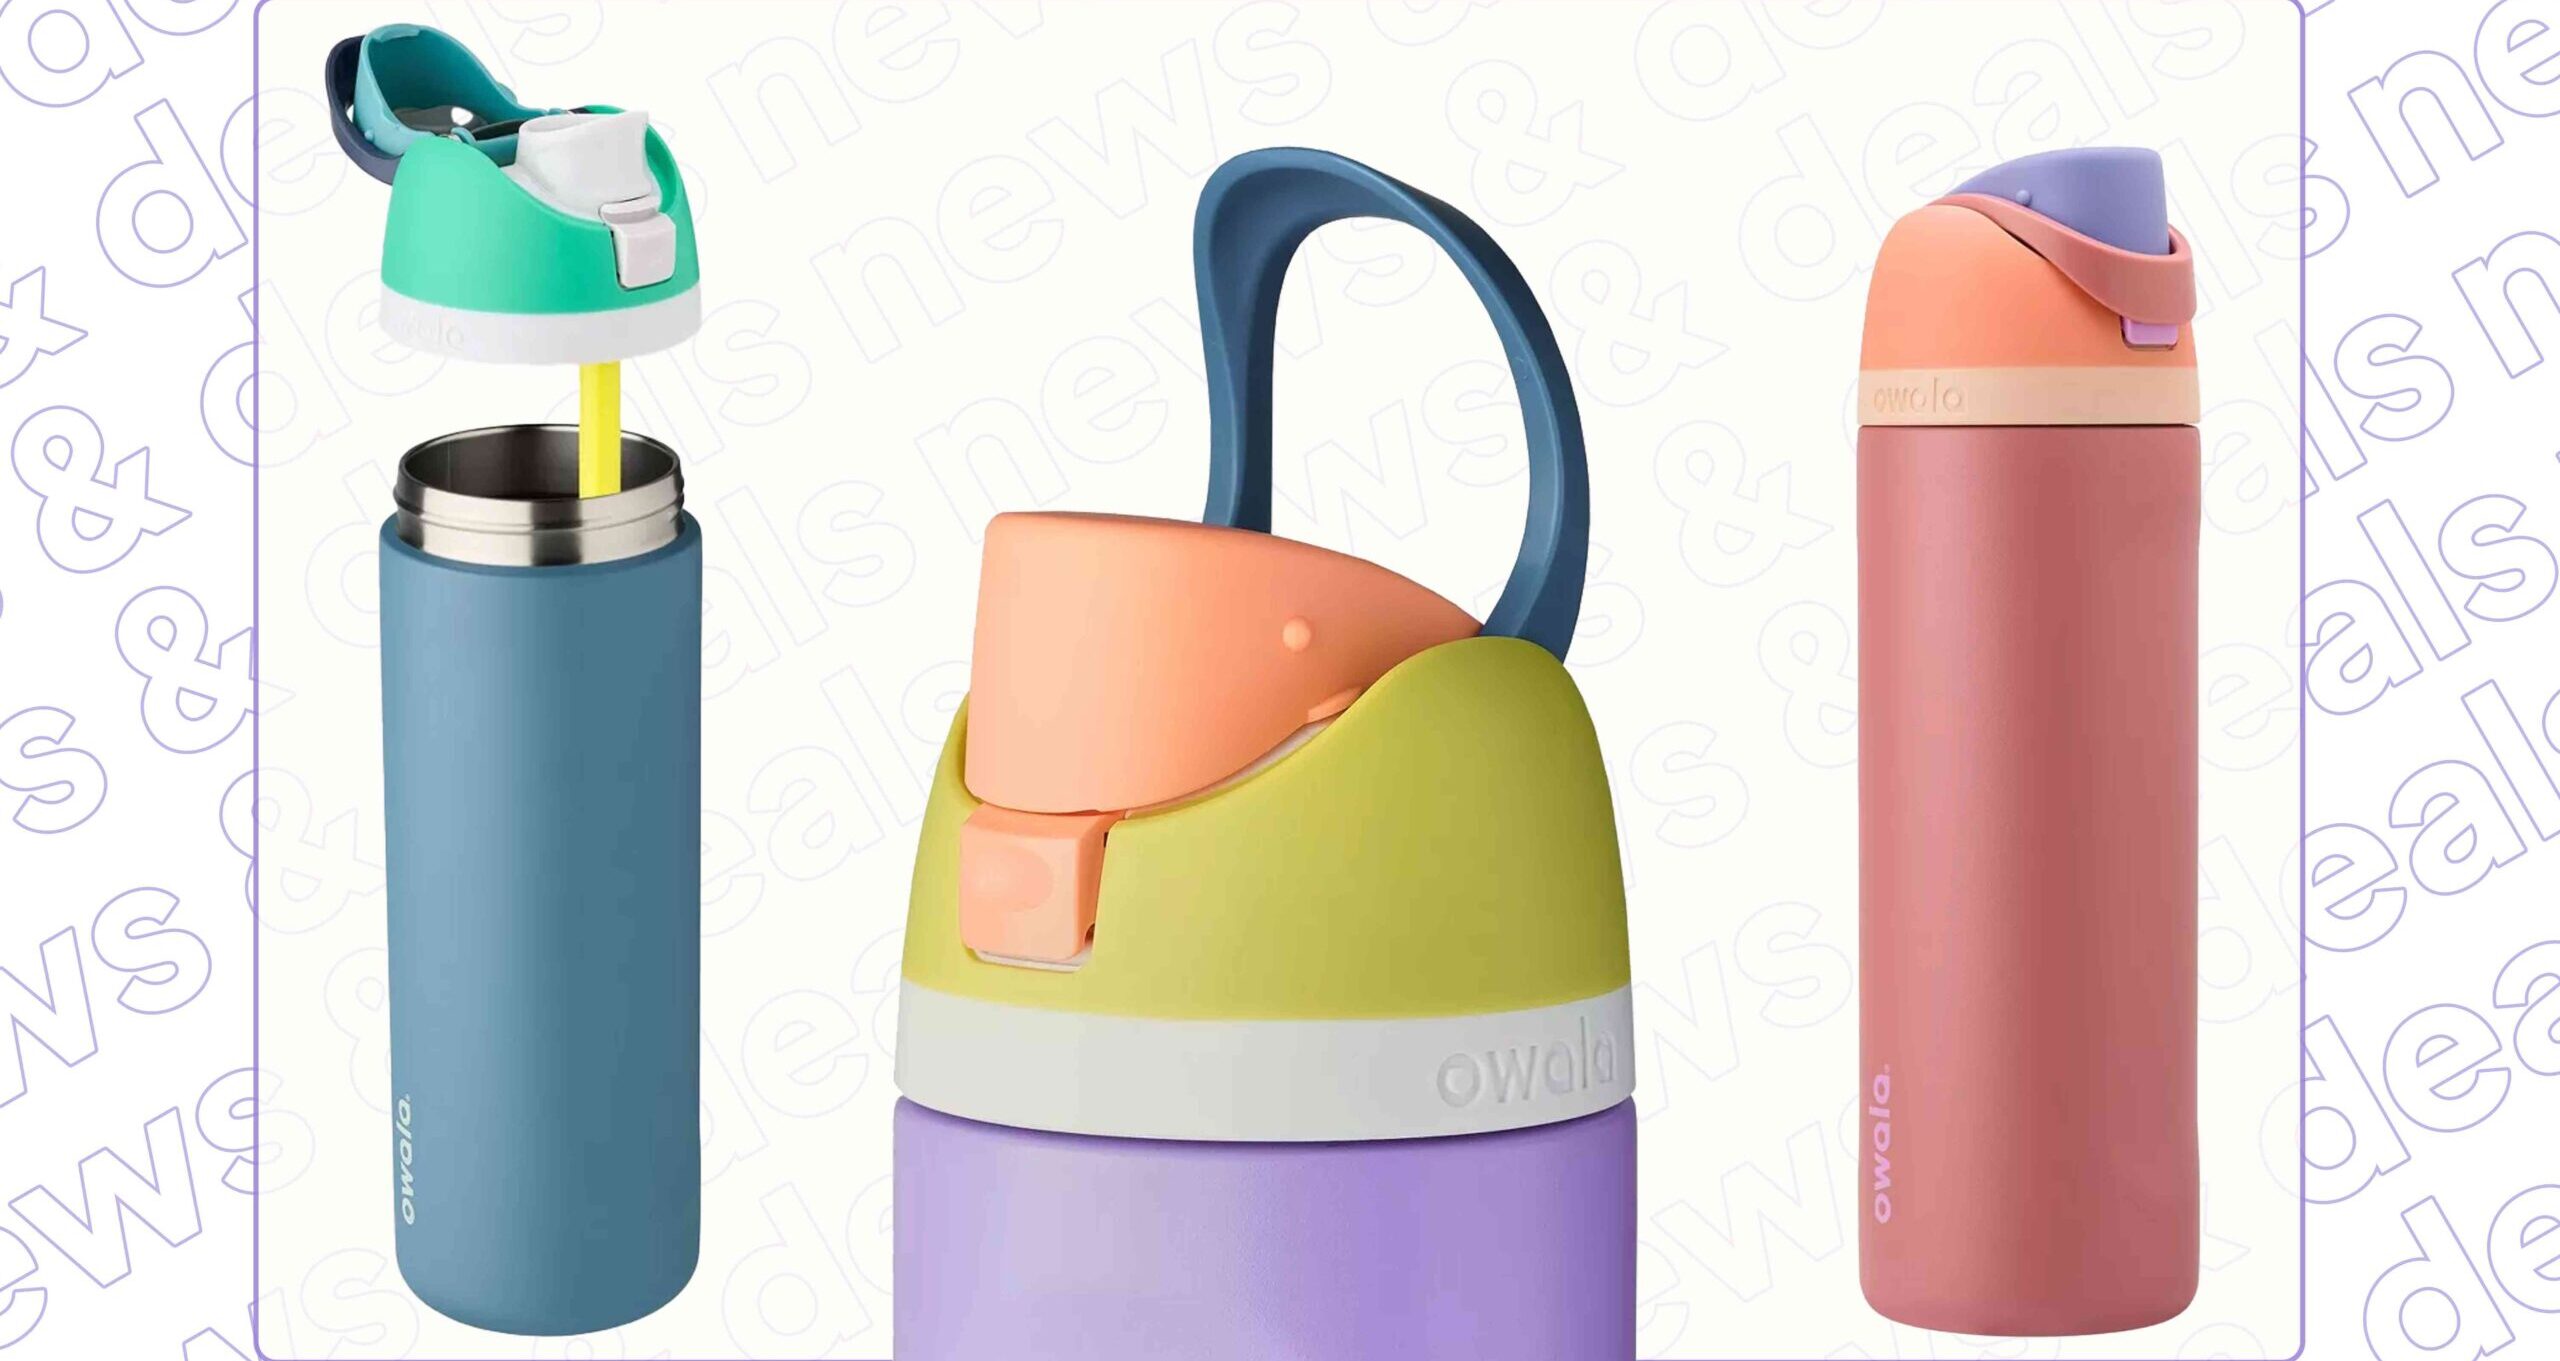 Owala Water Bottles